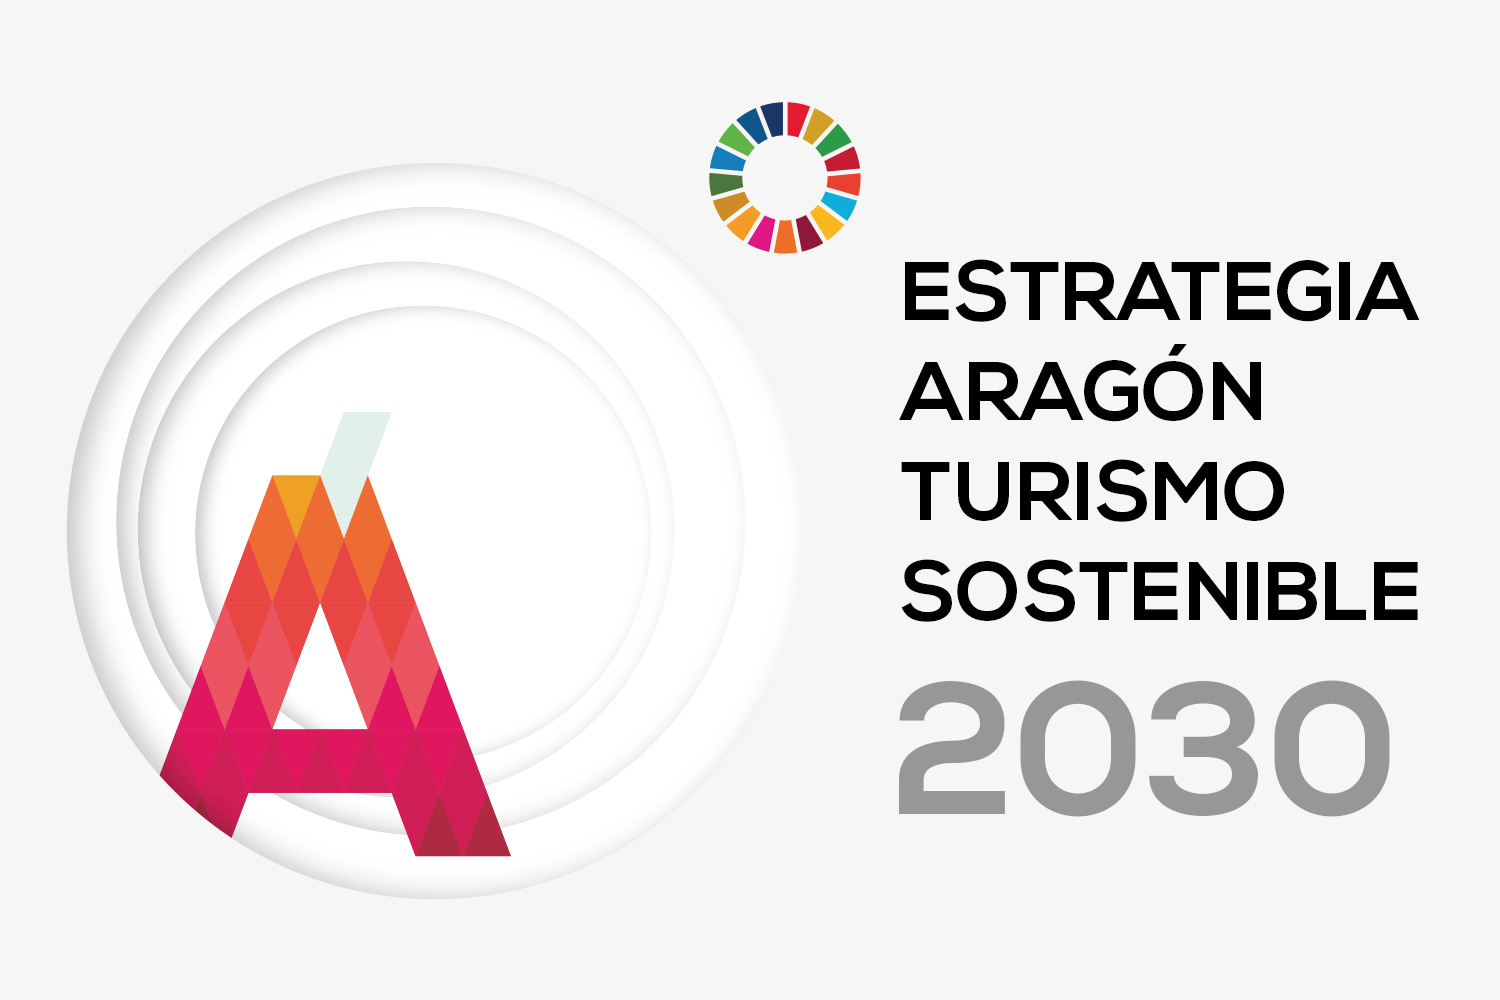 Aragón Turismo Sostenible 2030